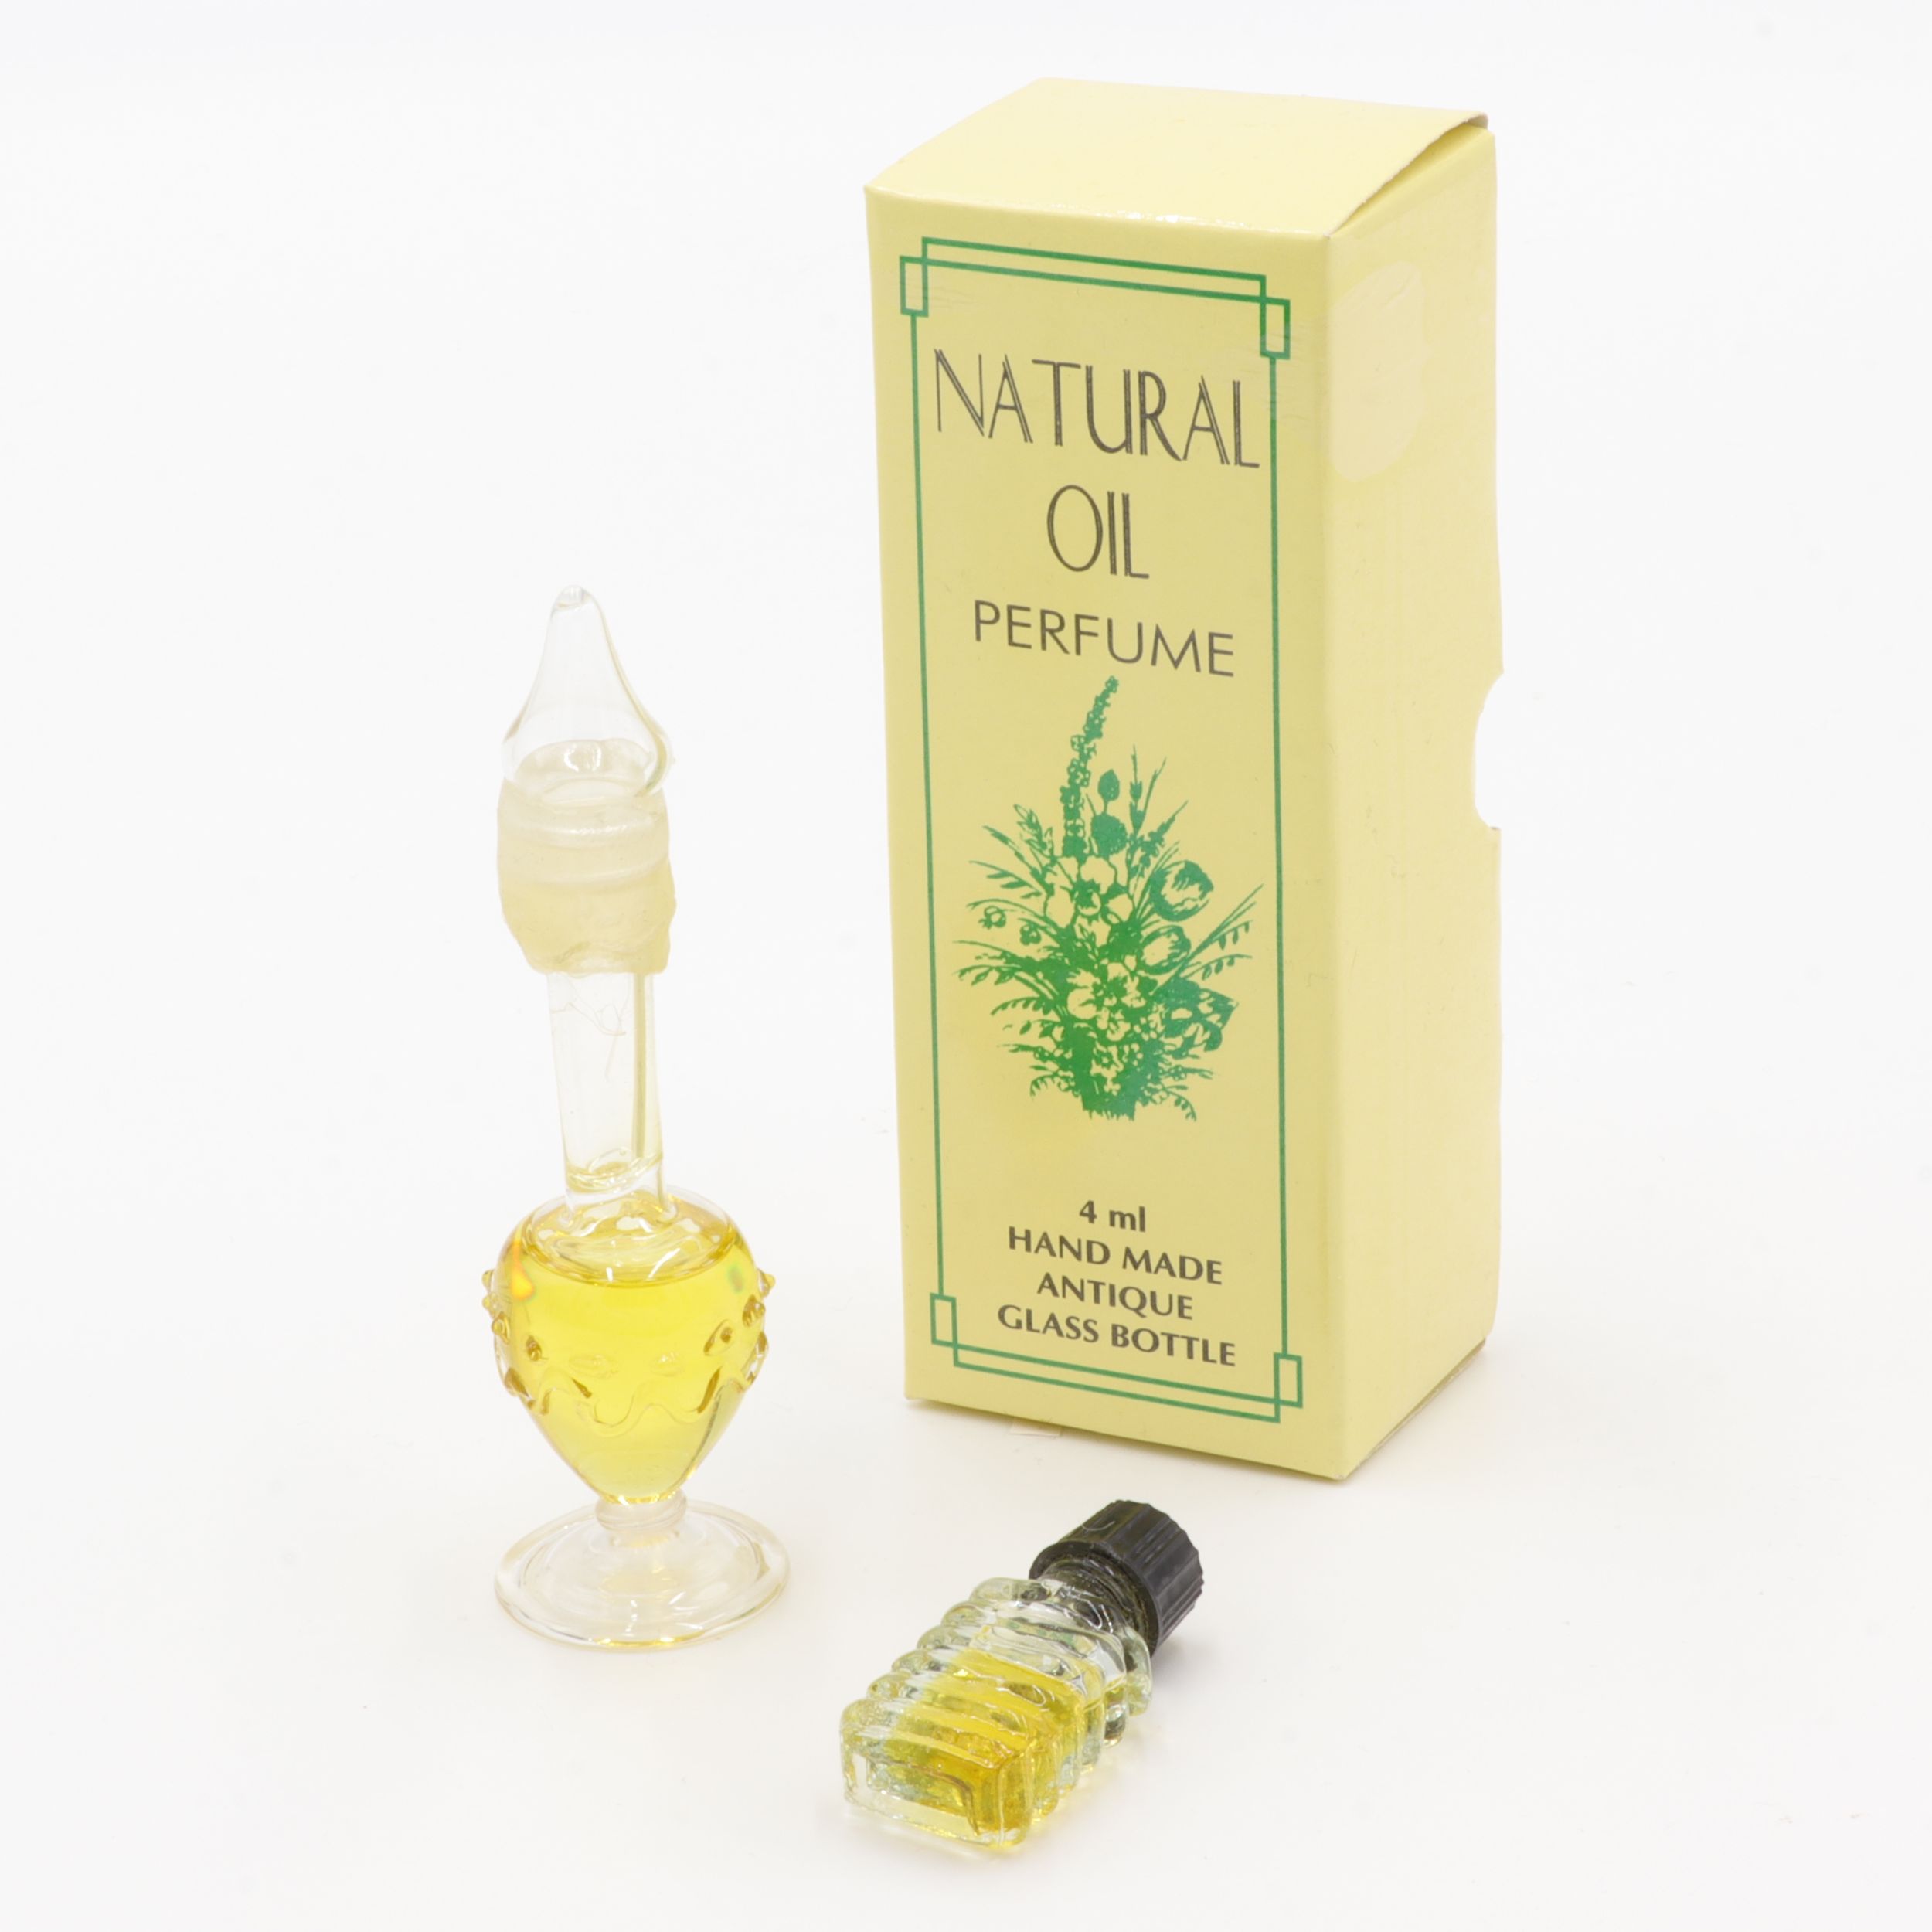 Natürliches Parfüm Öl - Antik-Flakon - Meditation - feiner Duft wie eine Reise nach Indien - aus feinsten indischen Zuten - in handgemachtem Flakon